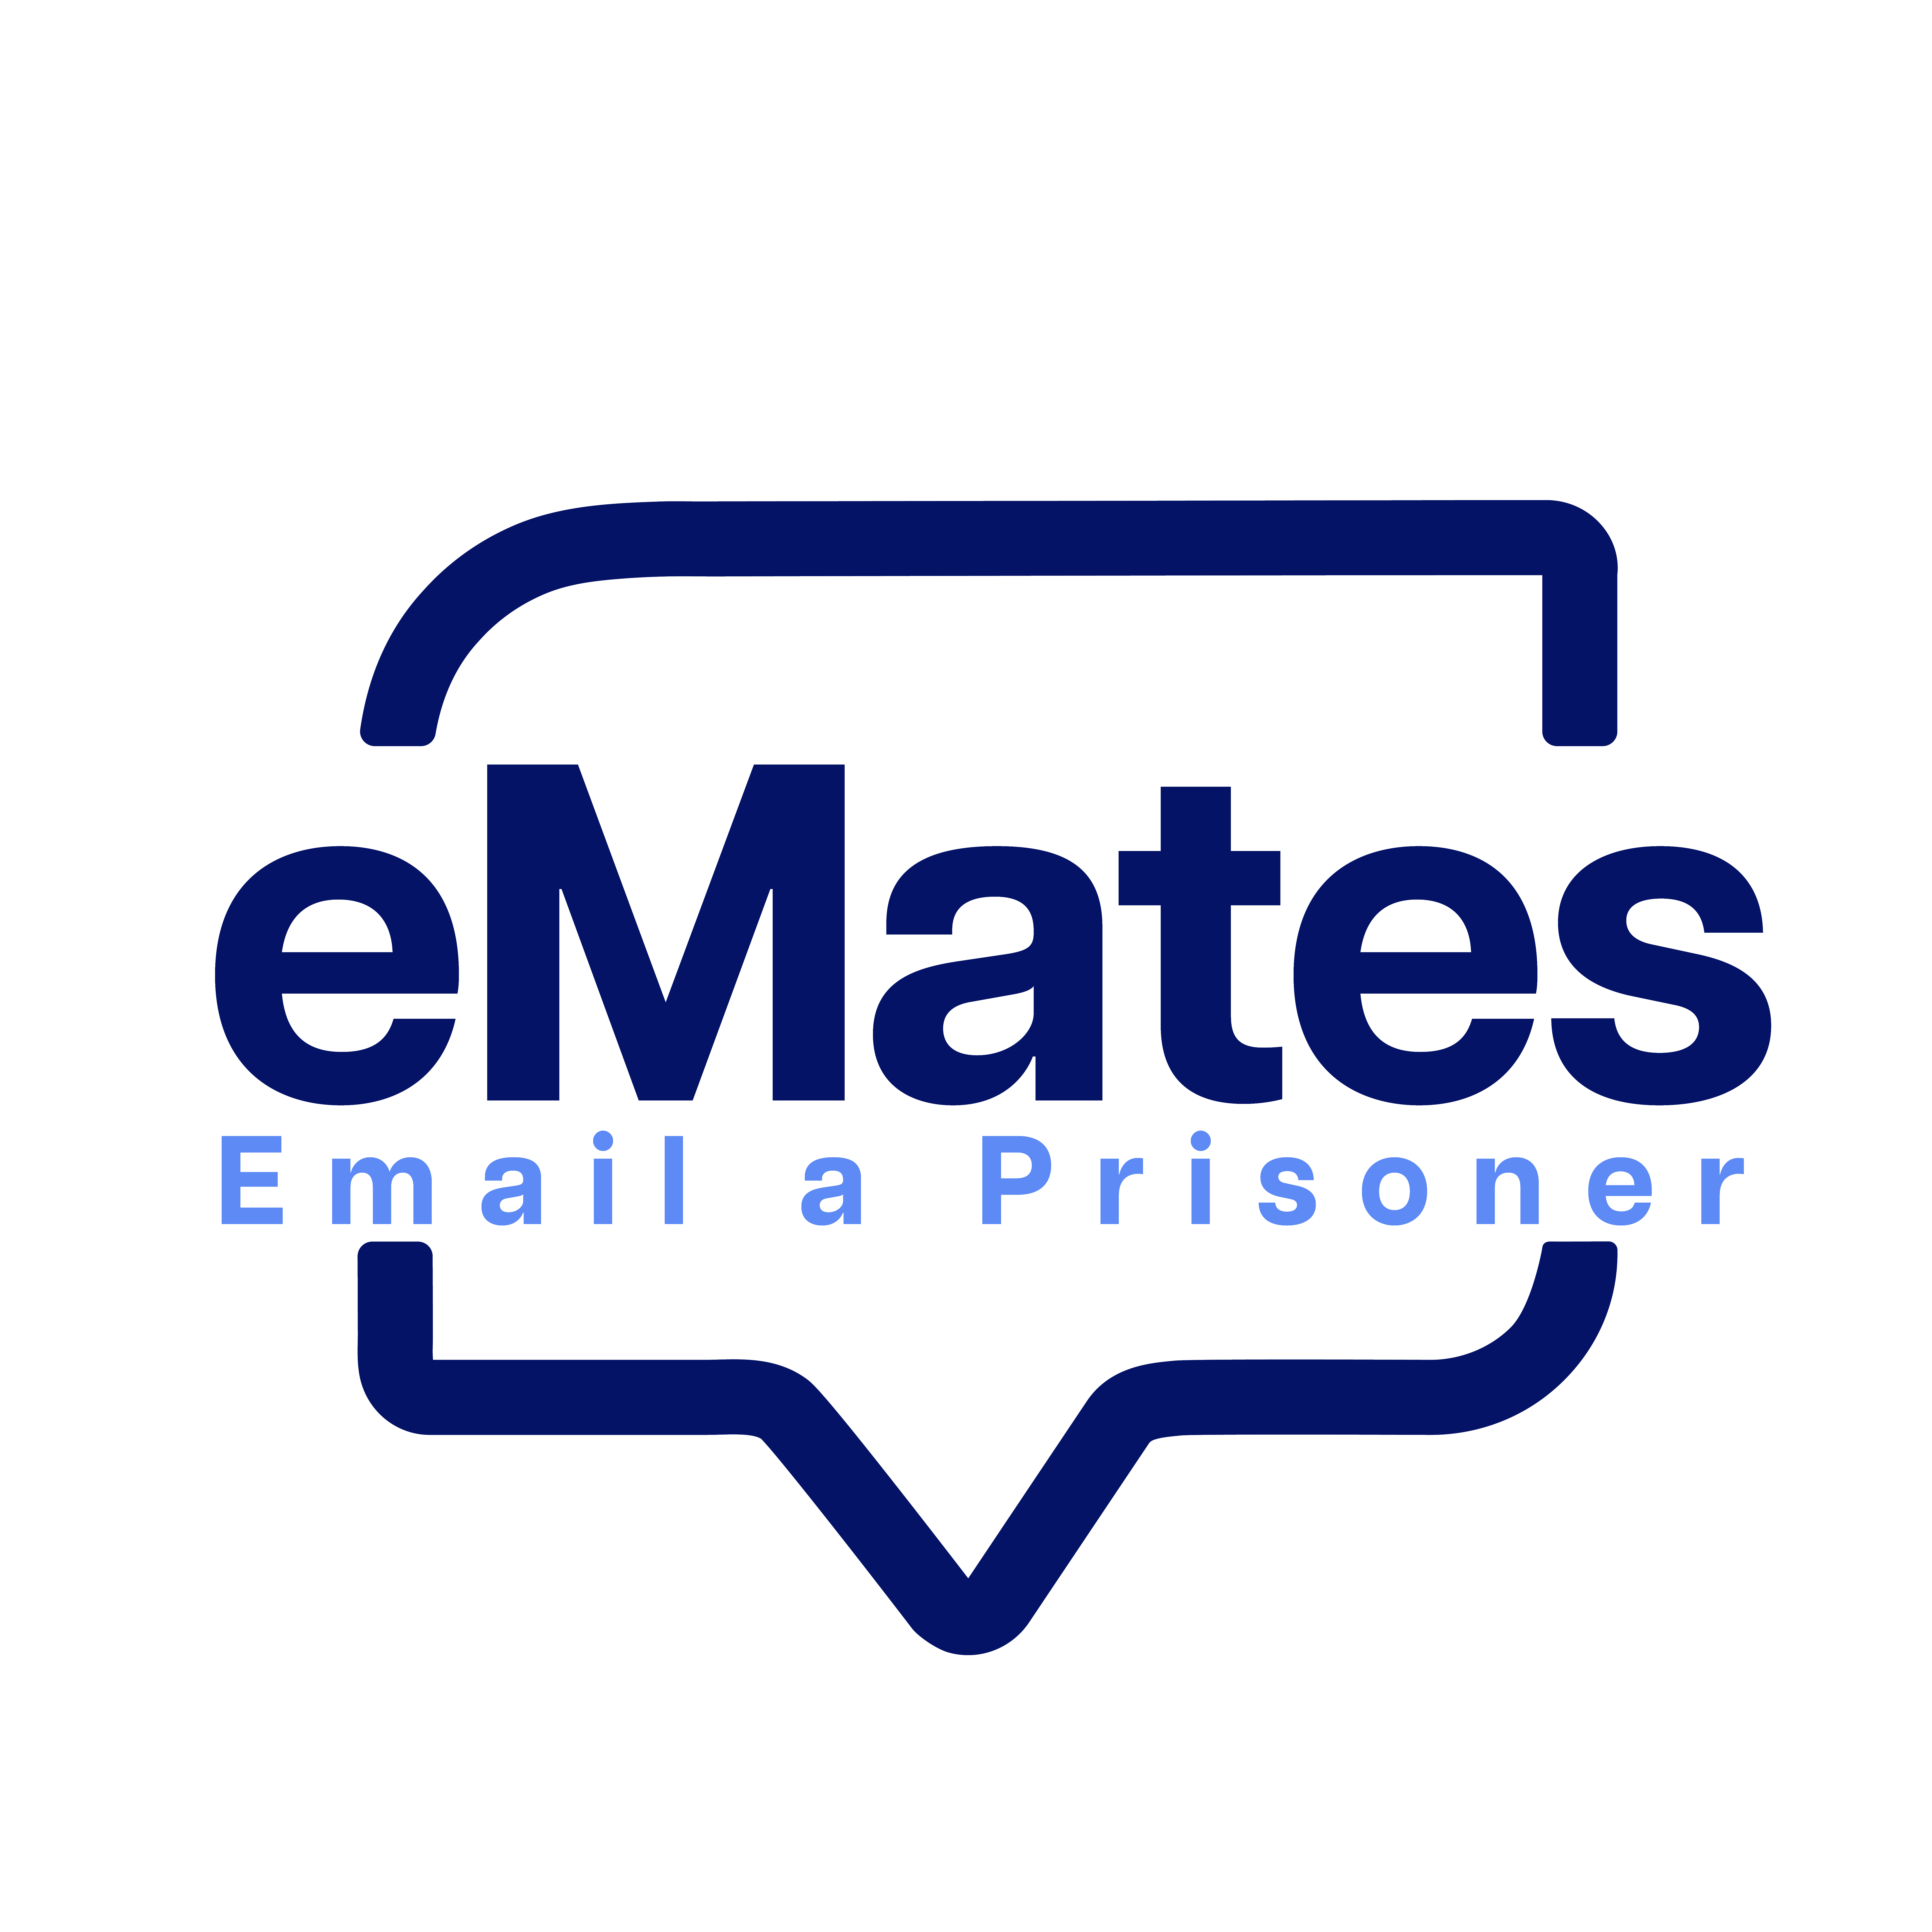 Email a Prisoner